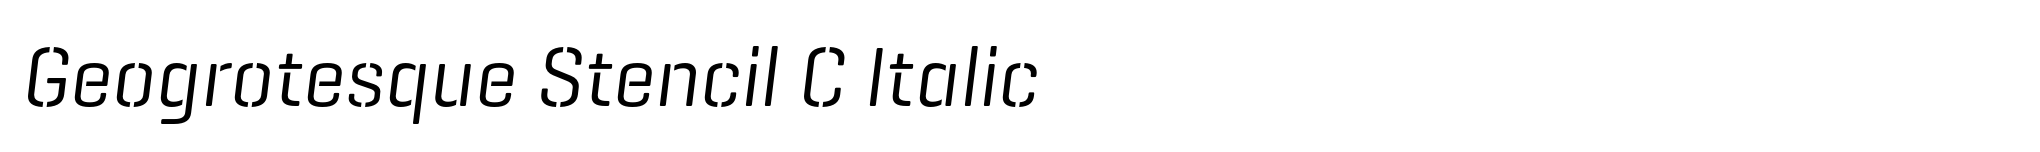 Geogrotesque Stencil C Italic image